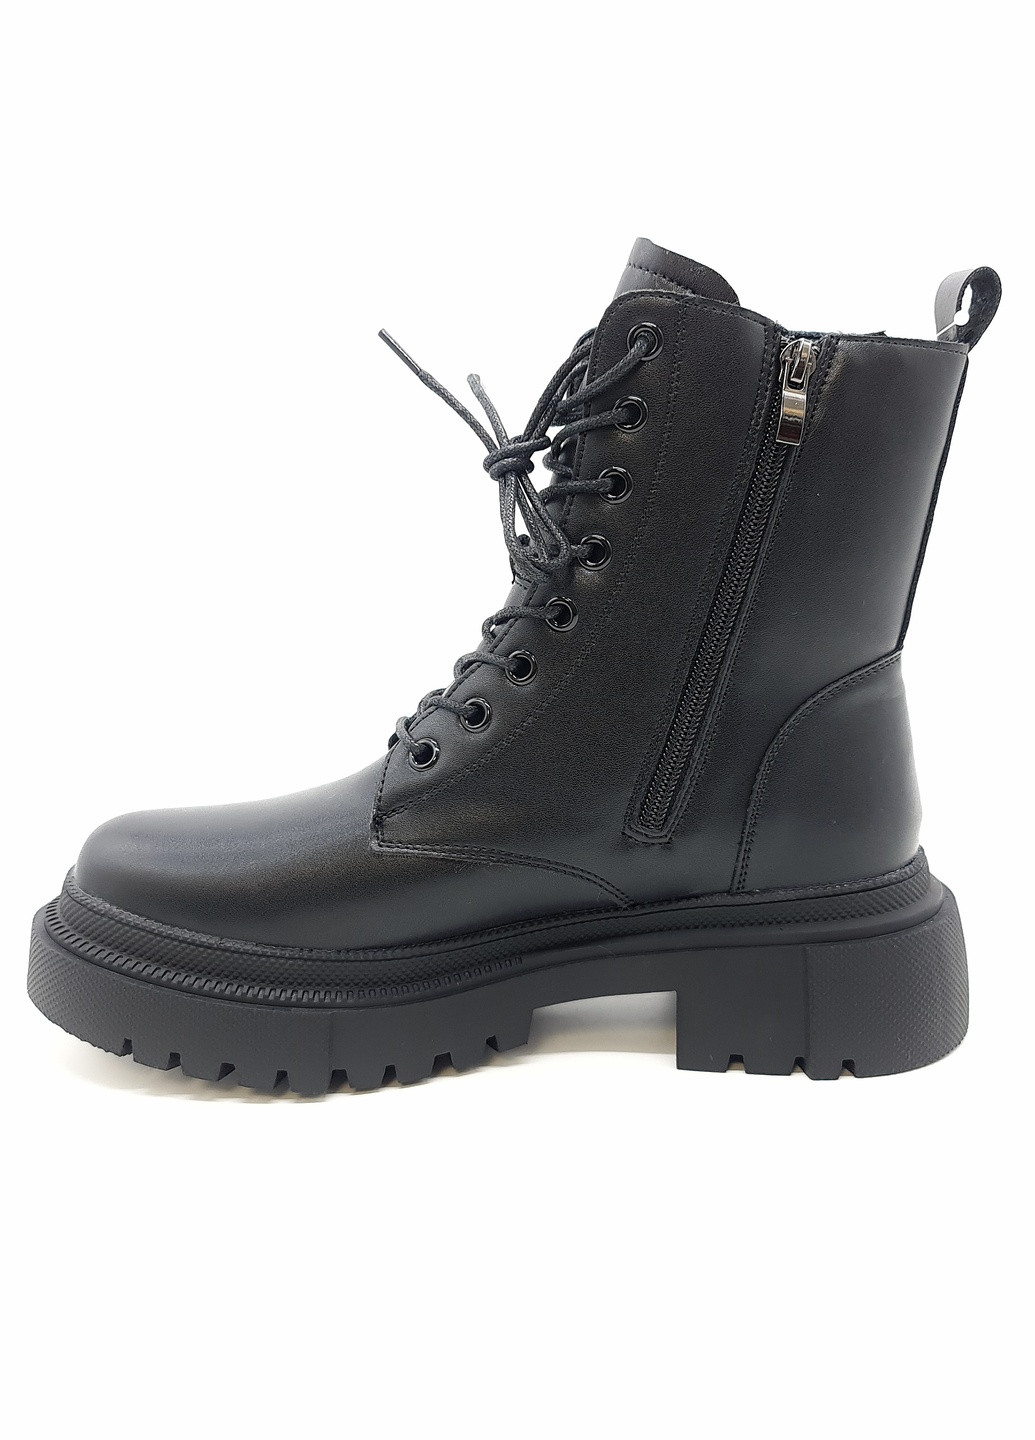 Осенние женские ботинки зимние черные кожаные he-11-3 23,5 см (р) Hengji